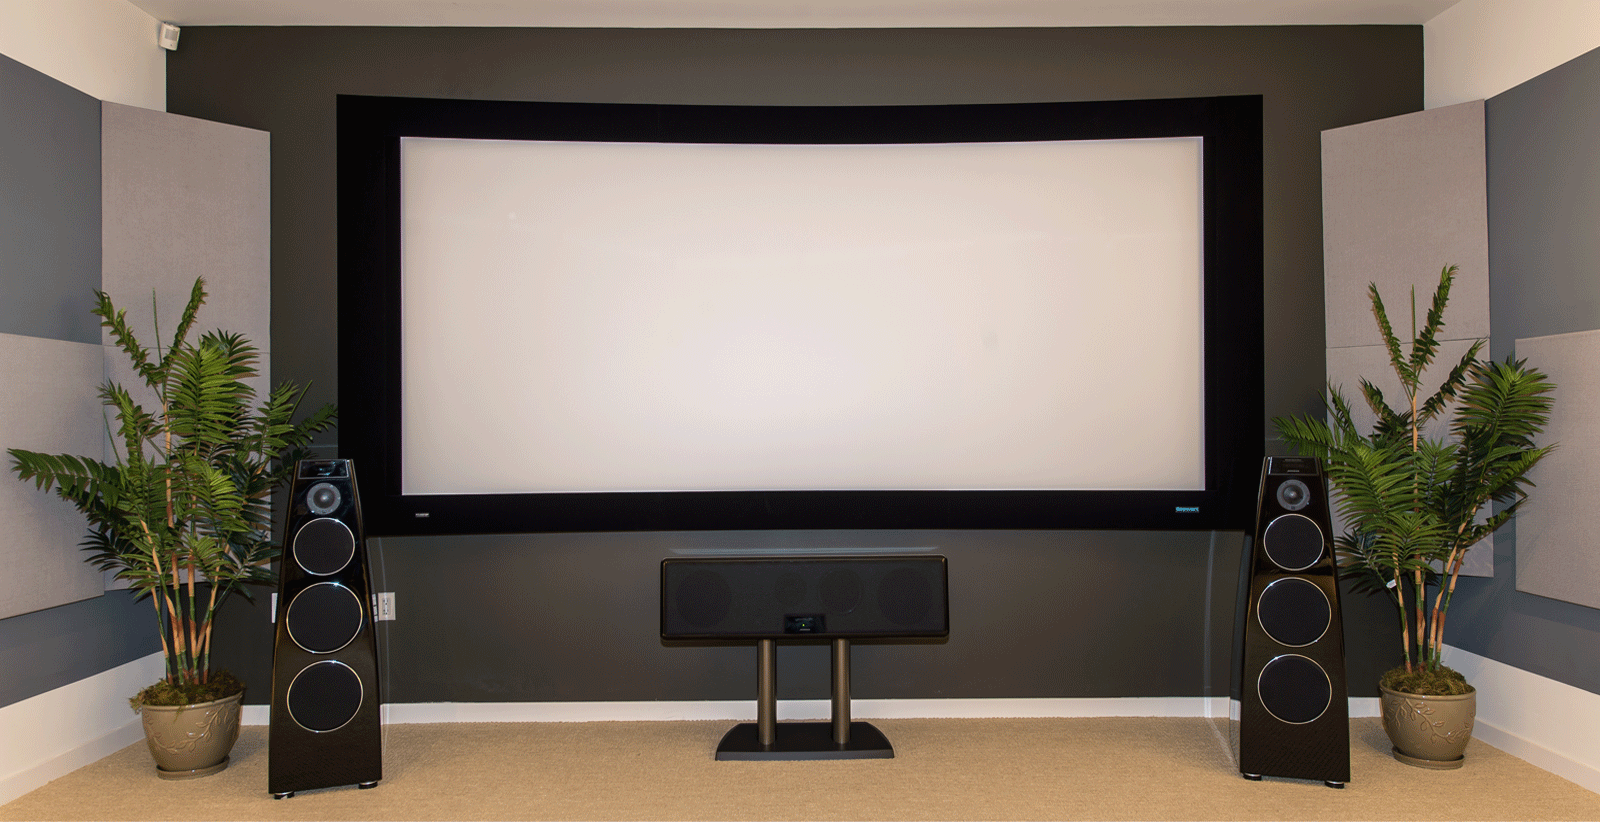 Ровно был экран. Экран для домашнего кинотеатра. Экран для проектора. Домашний кинотеатр с проектором и экраном. Экран для проектора на стене.